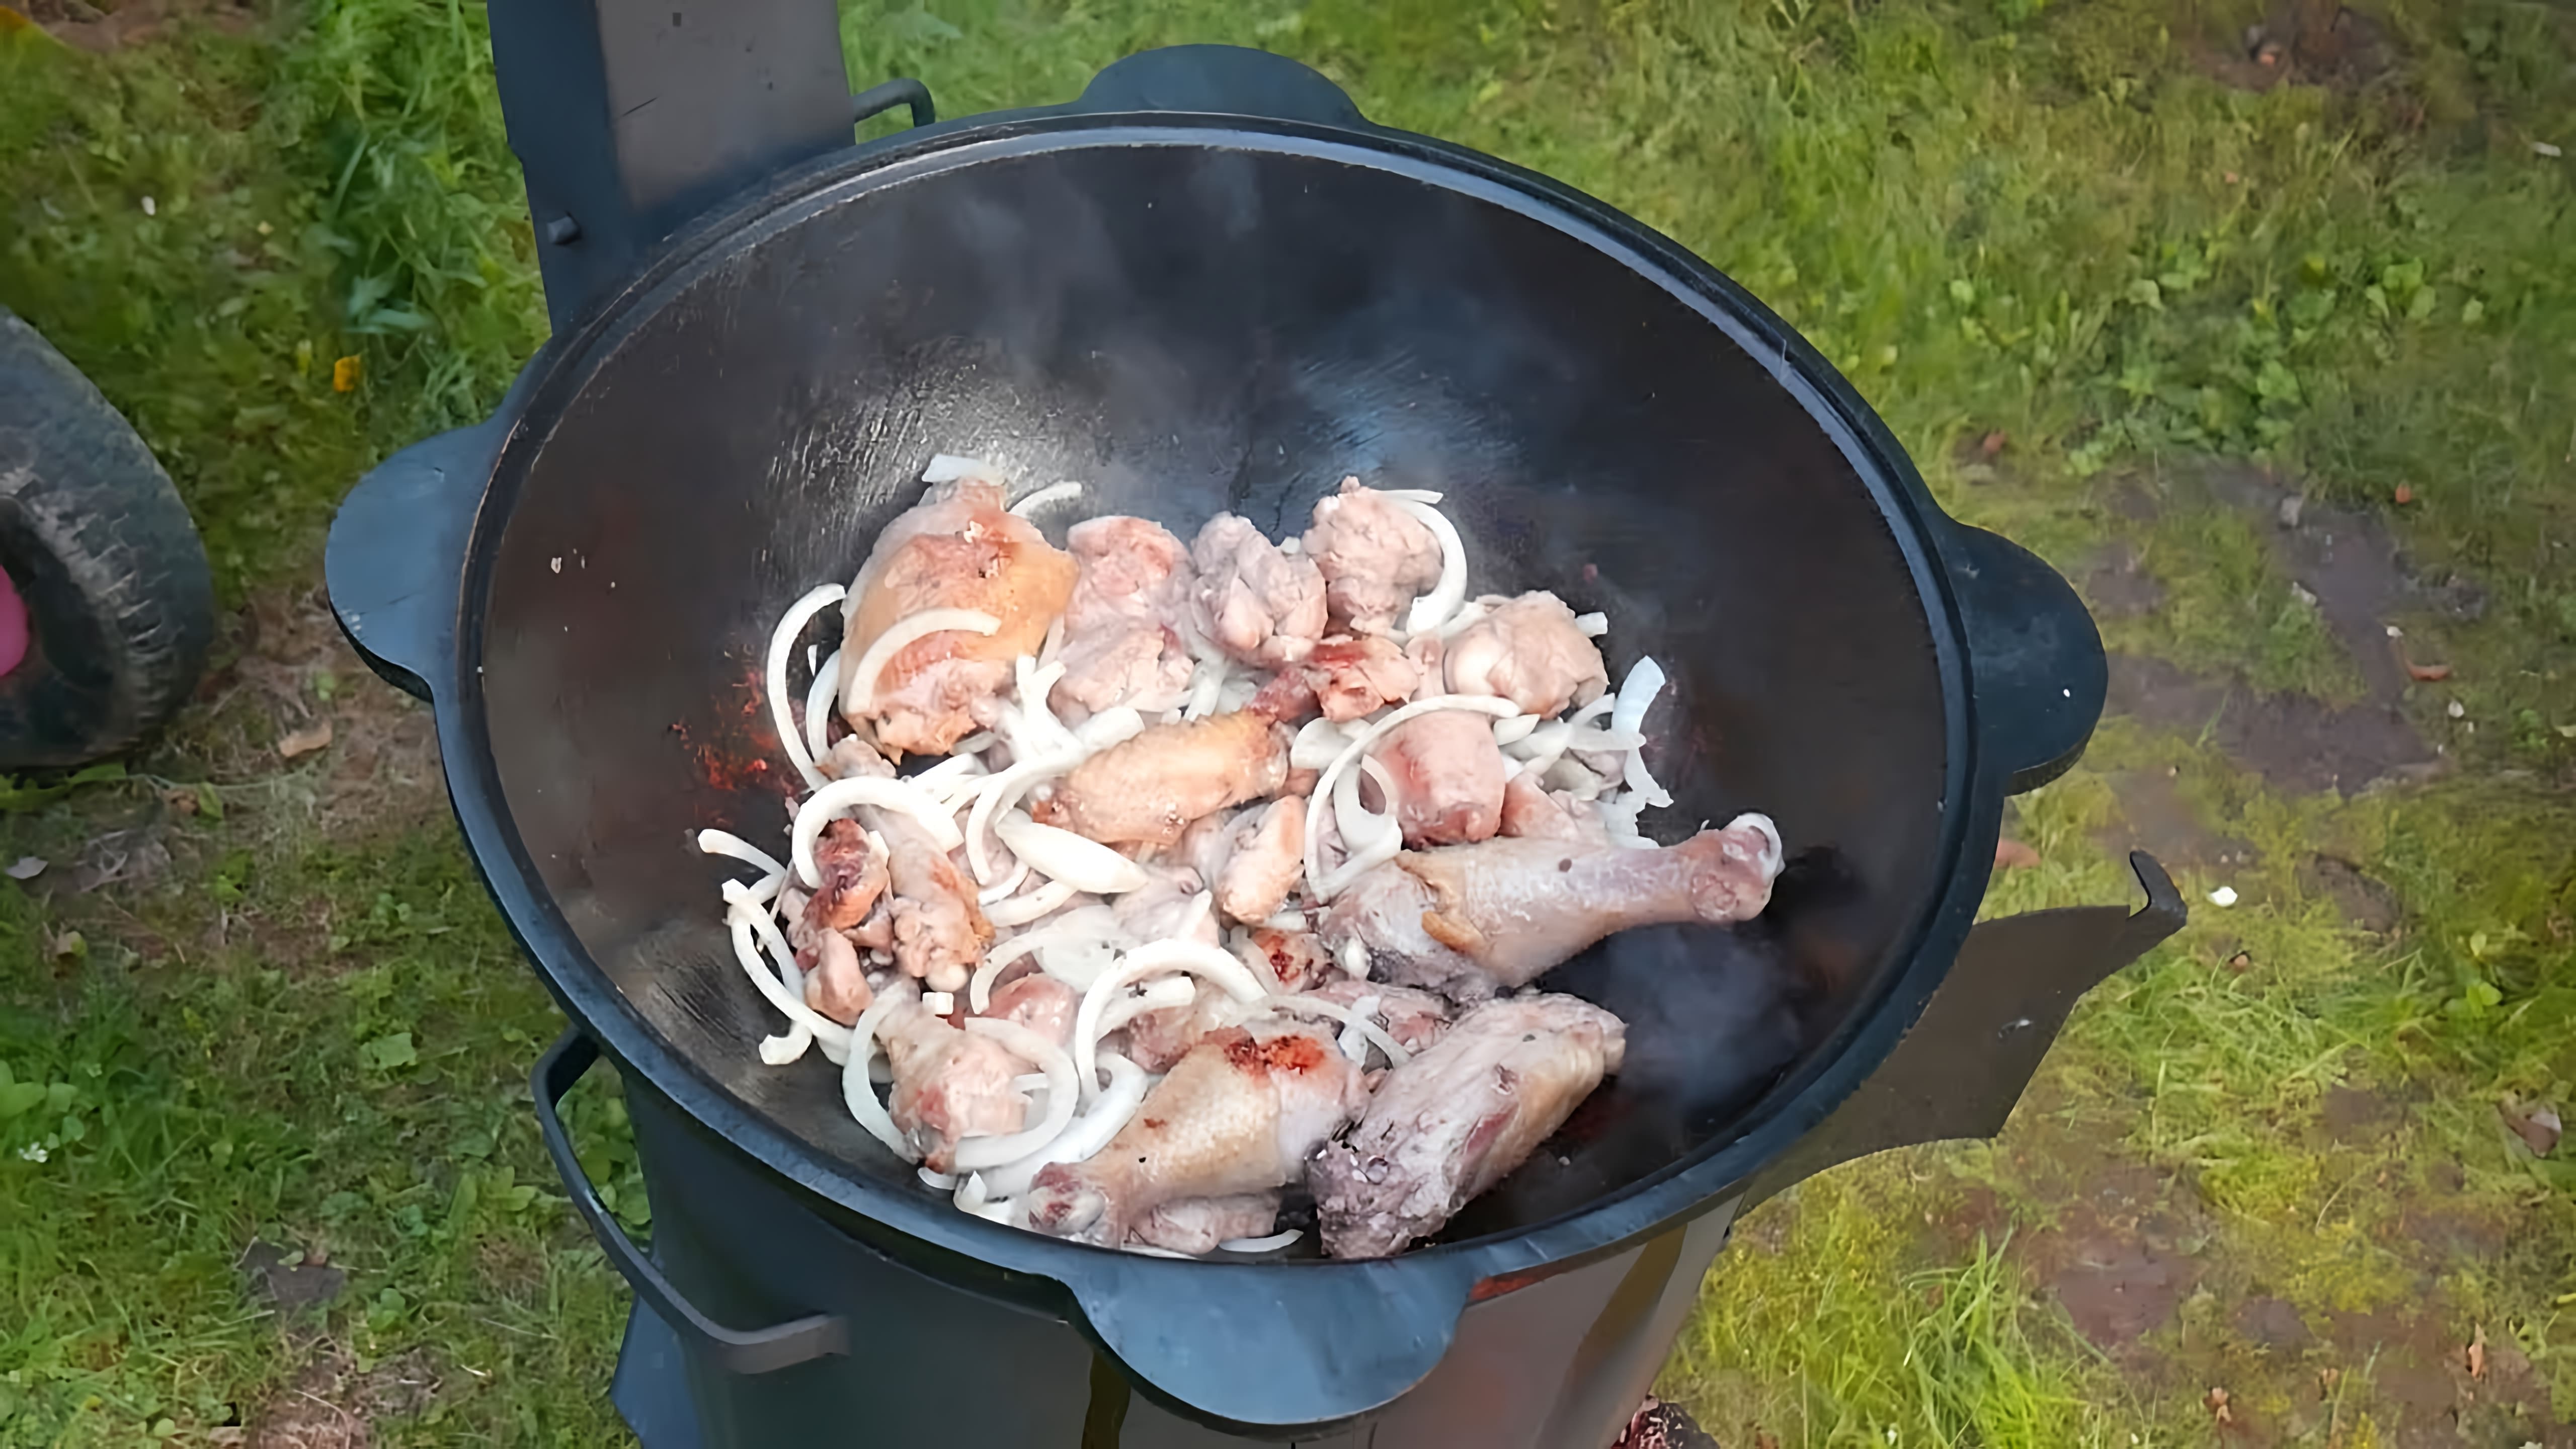 В этом видео демонстрируется процесс приготовления грузинского блюда чахохбили из курицы в чугунном казане на костре